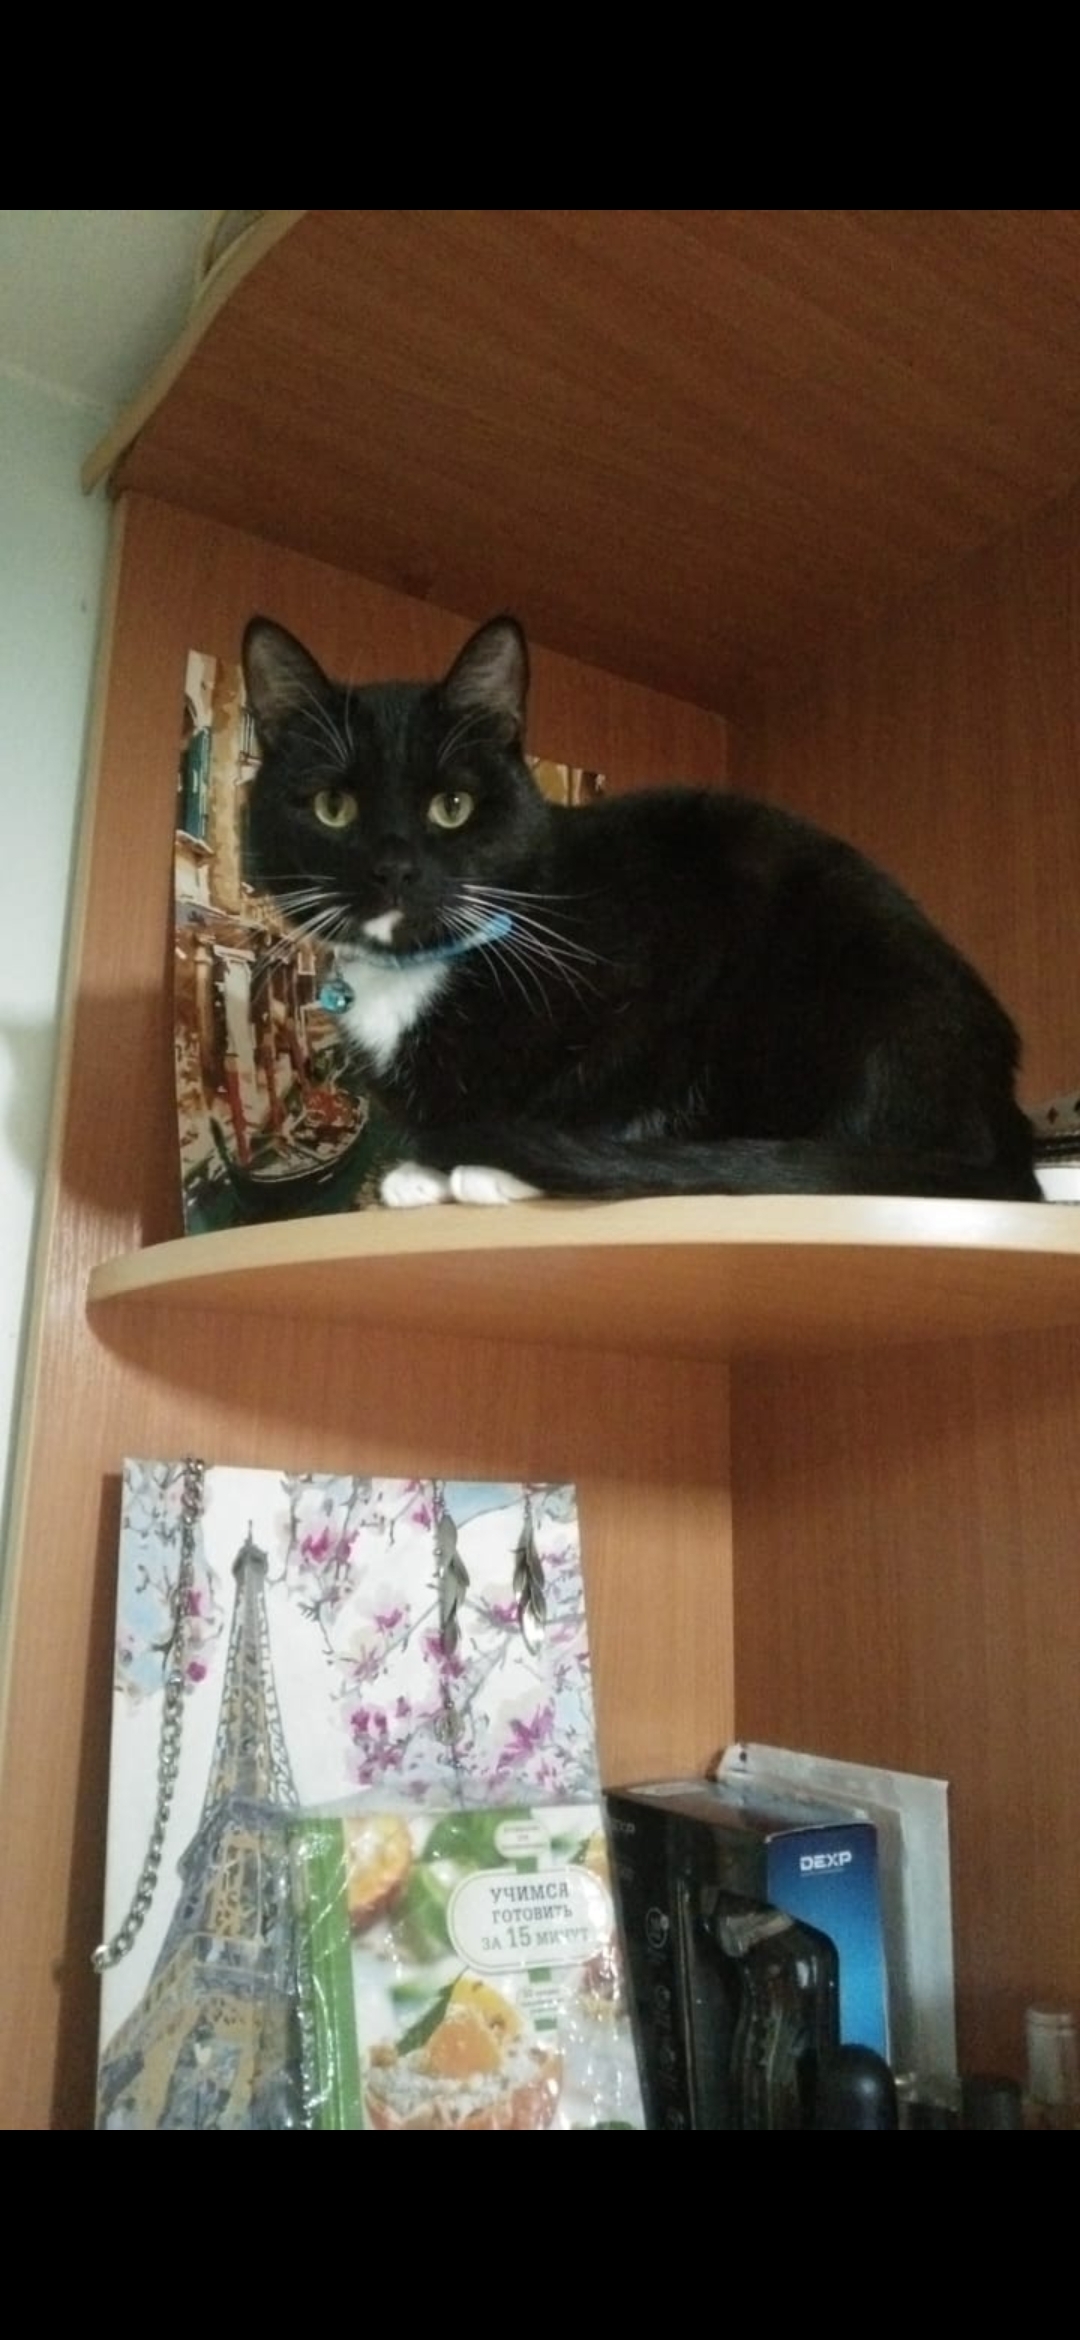 Пропала кошка в Конаково, Тверская обл. Опознавательные признаки: Коффи, 2 года, чёрно-белый окрас, синий ошейник. Помогите найти!